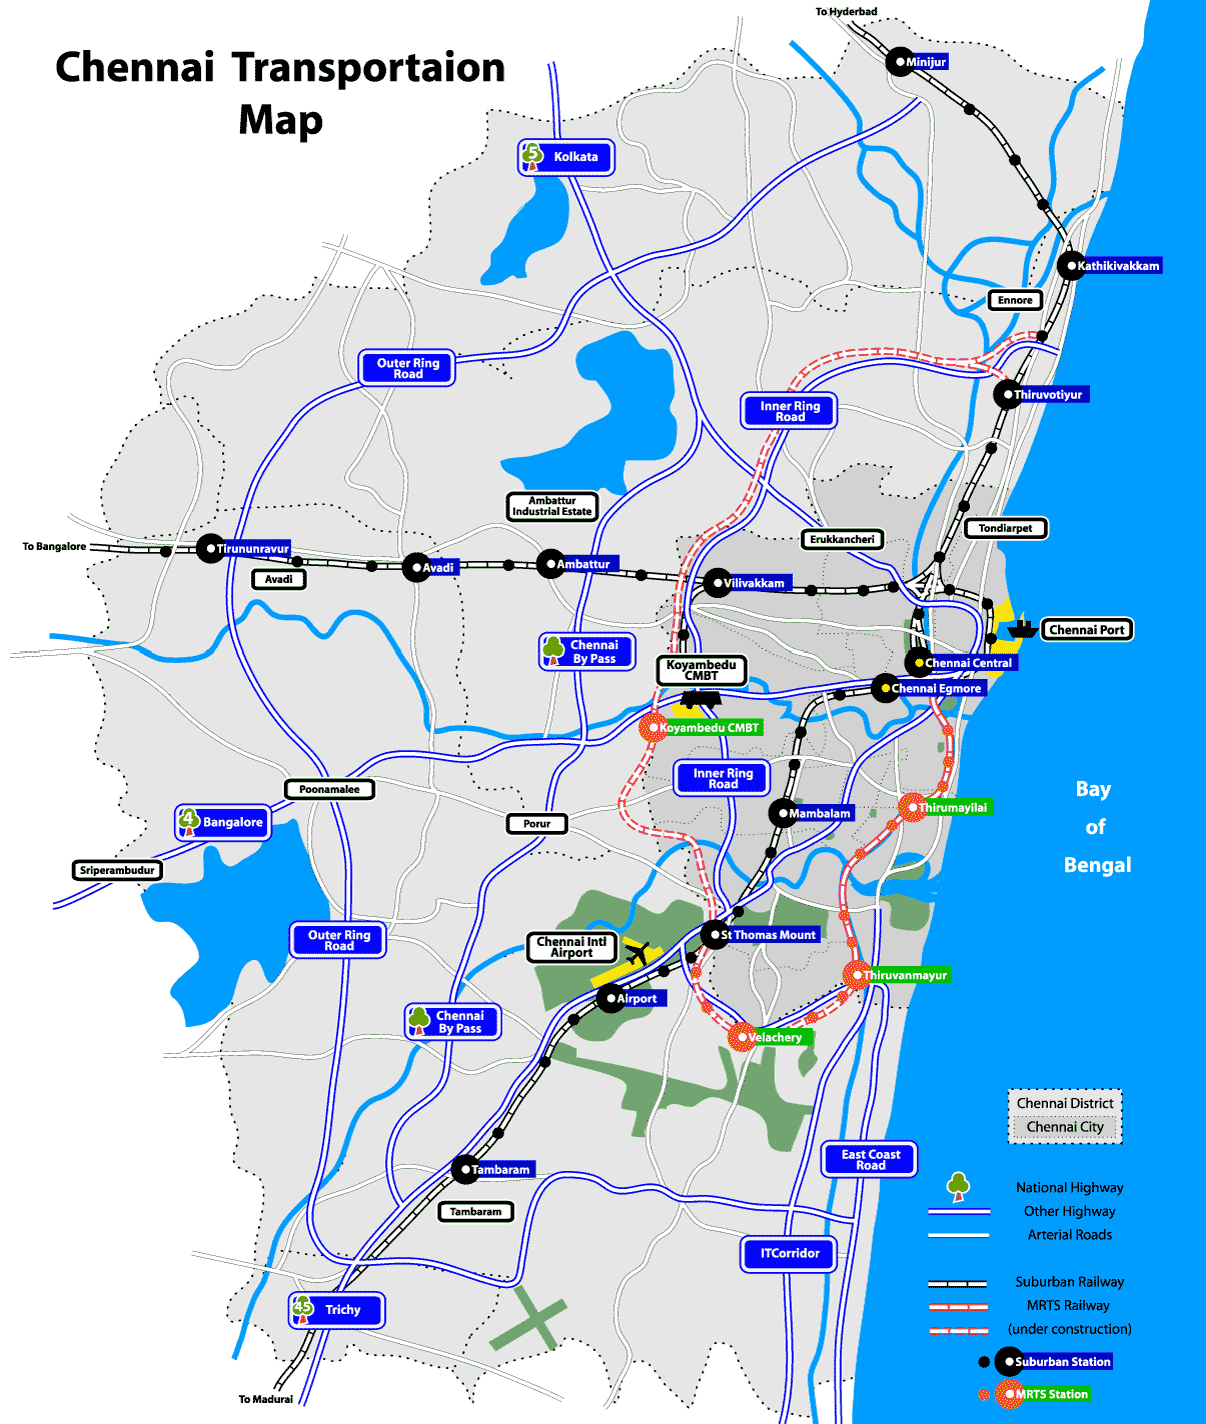 Chennai Transportation Map